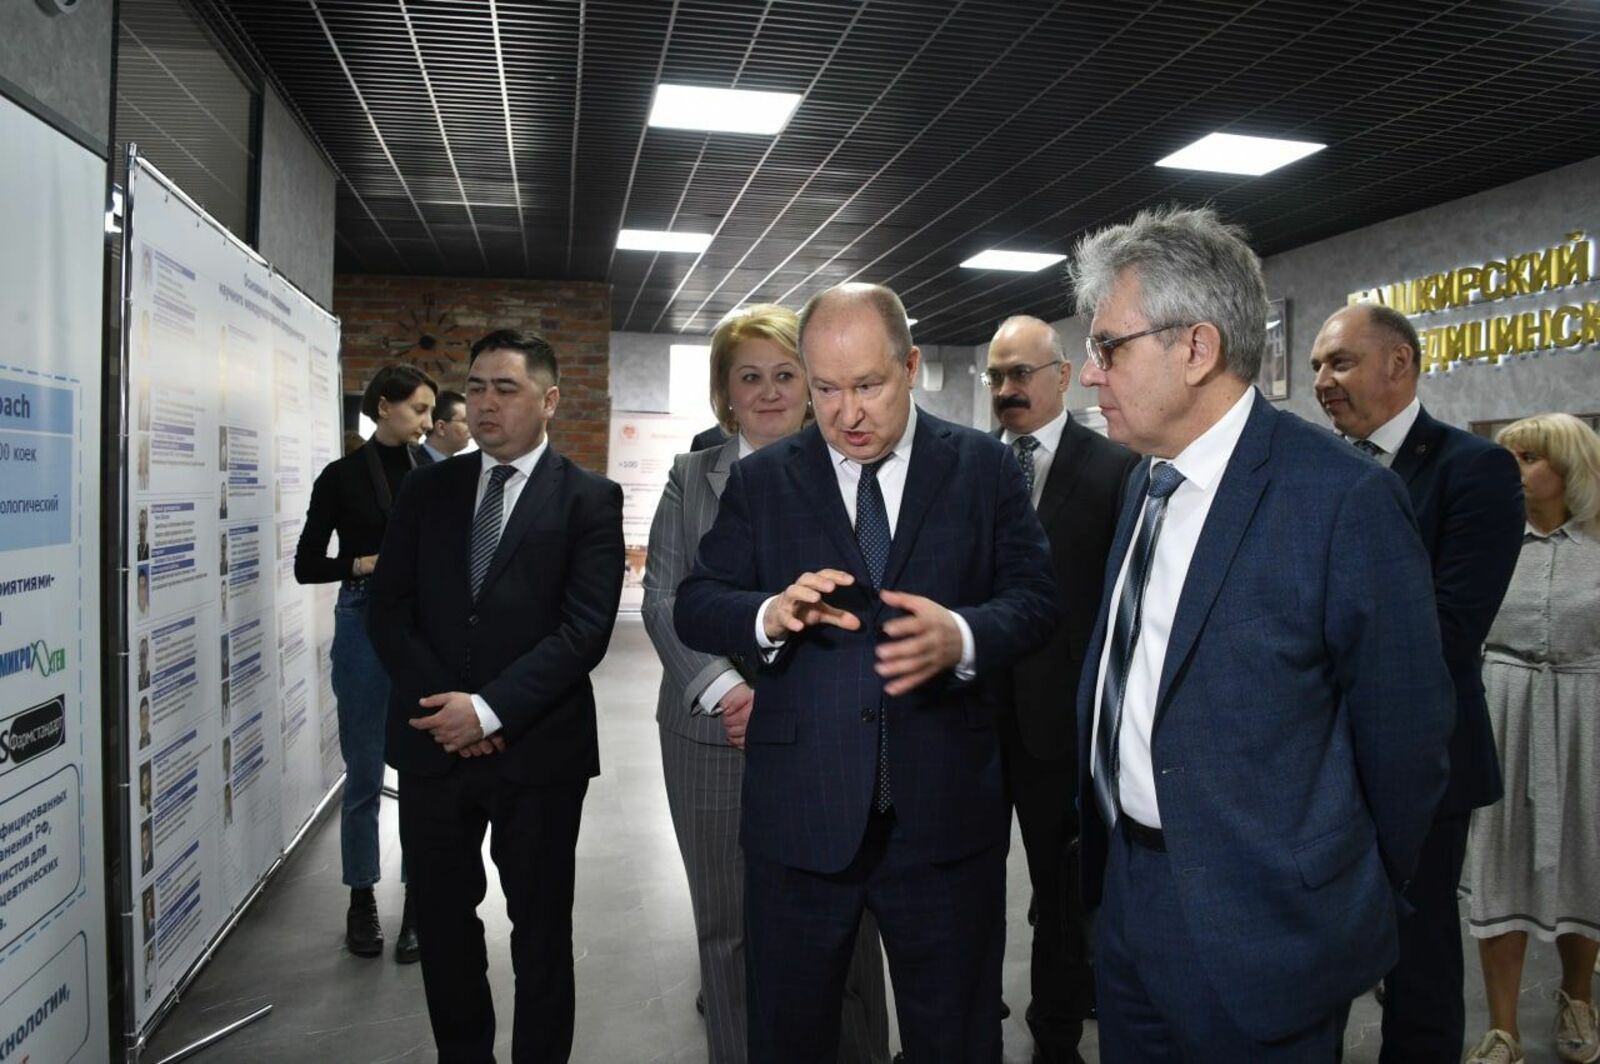 Первая аудитория Центра развития компетенций Евразийского НОЦ открылась в УГАТУ